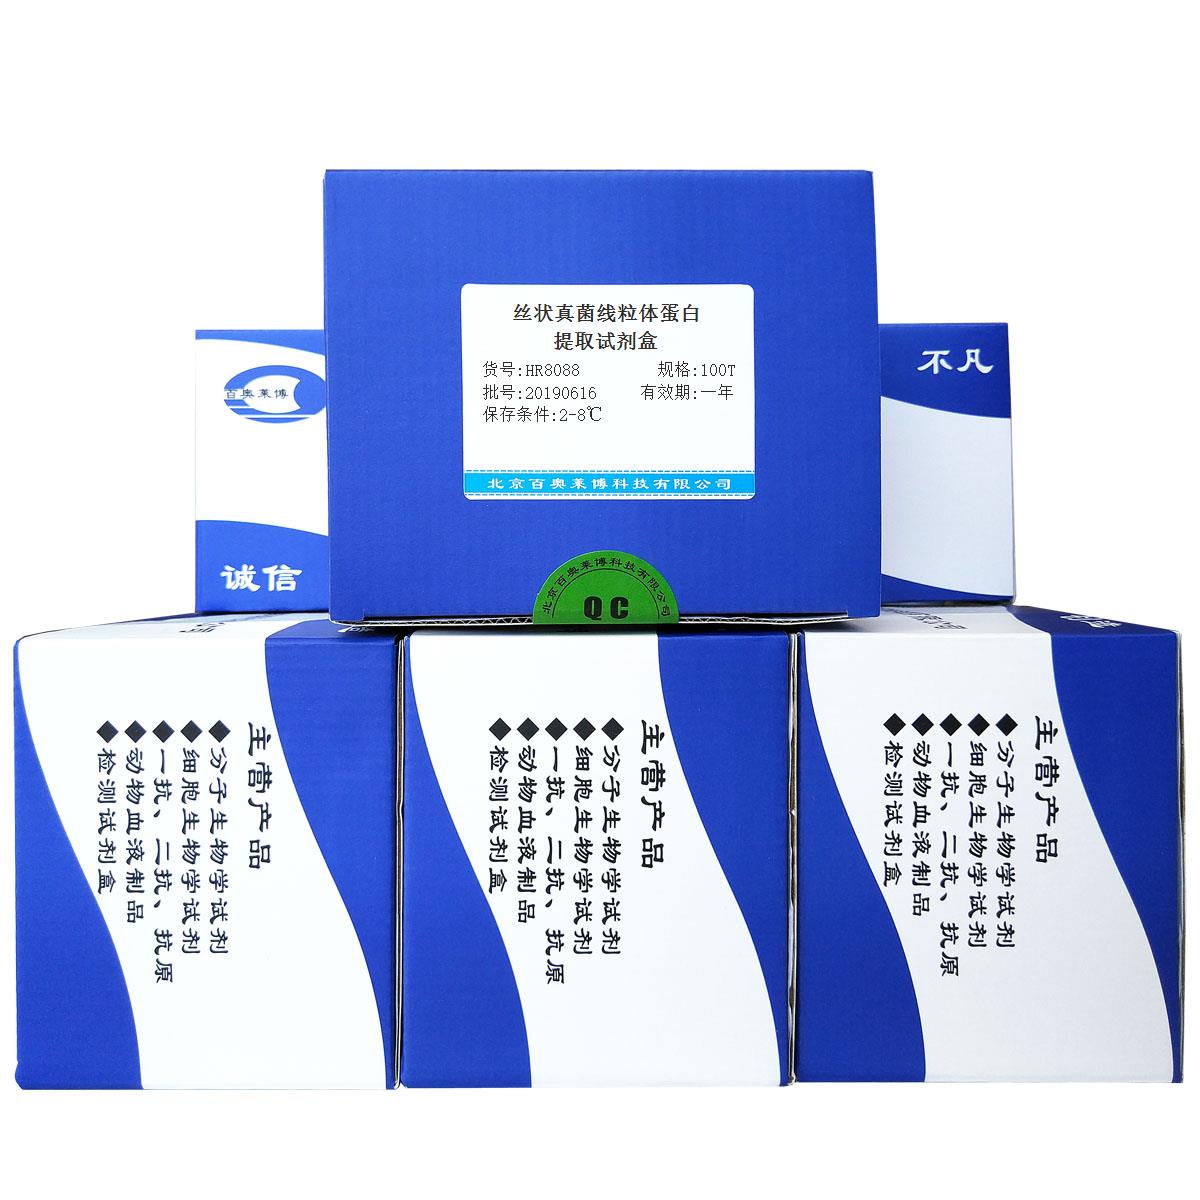 丝状真菌线粒体蛋白提取试剂盒北京品牌